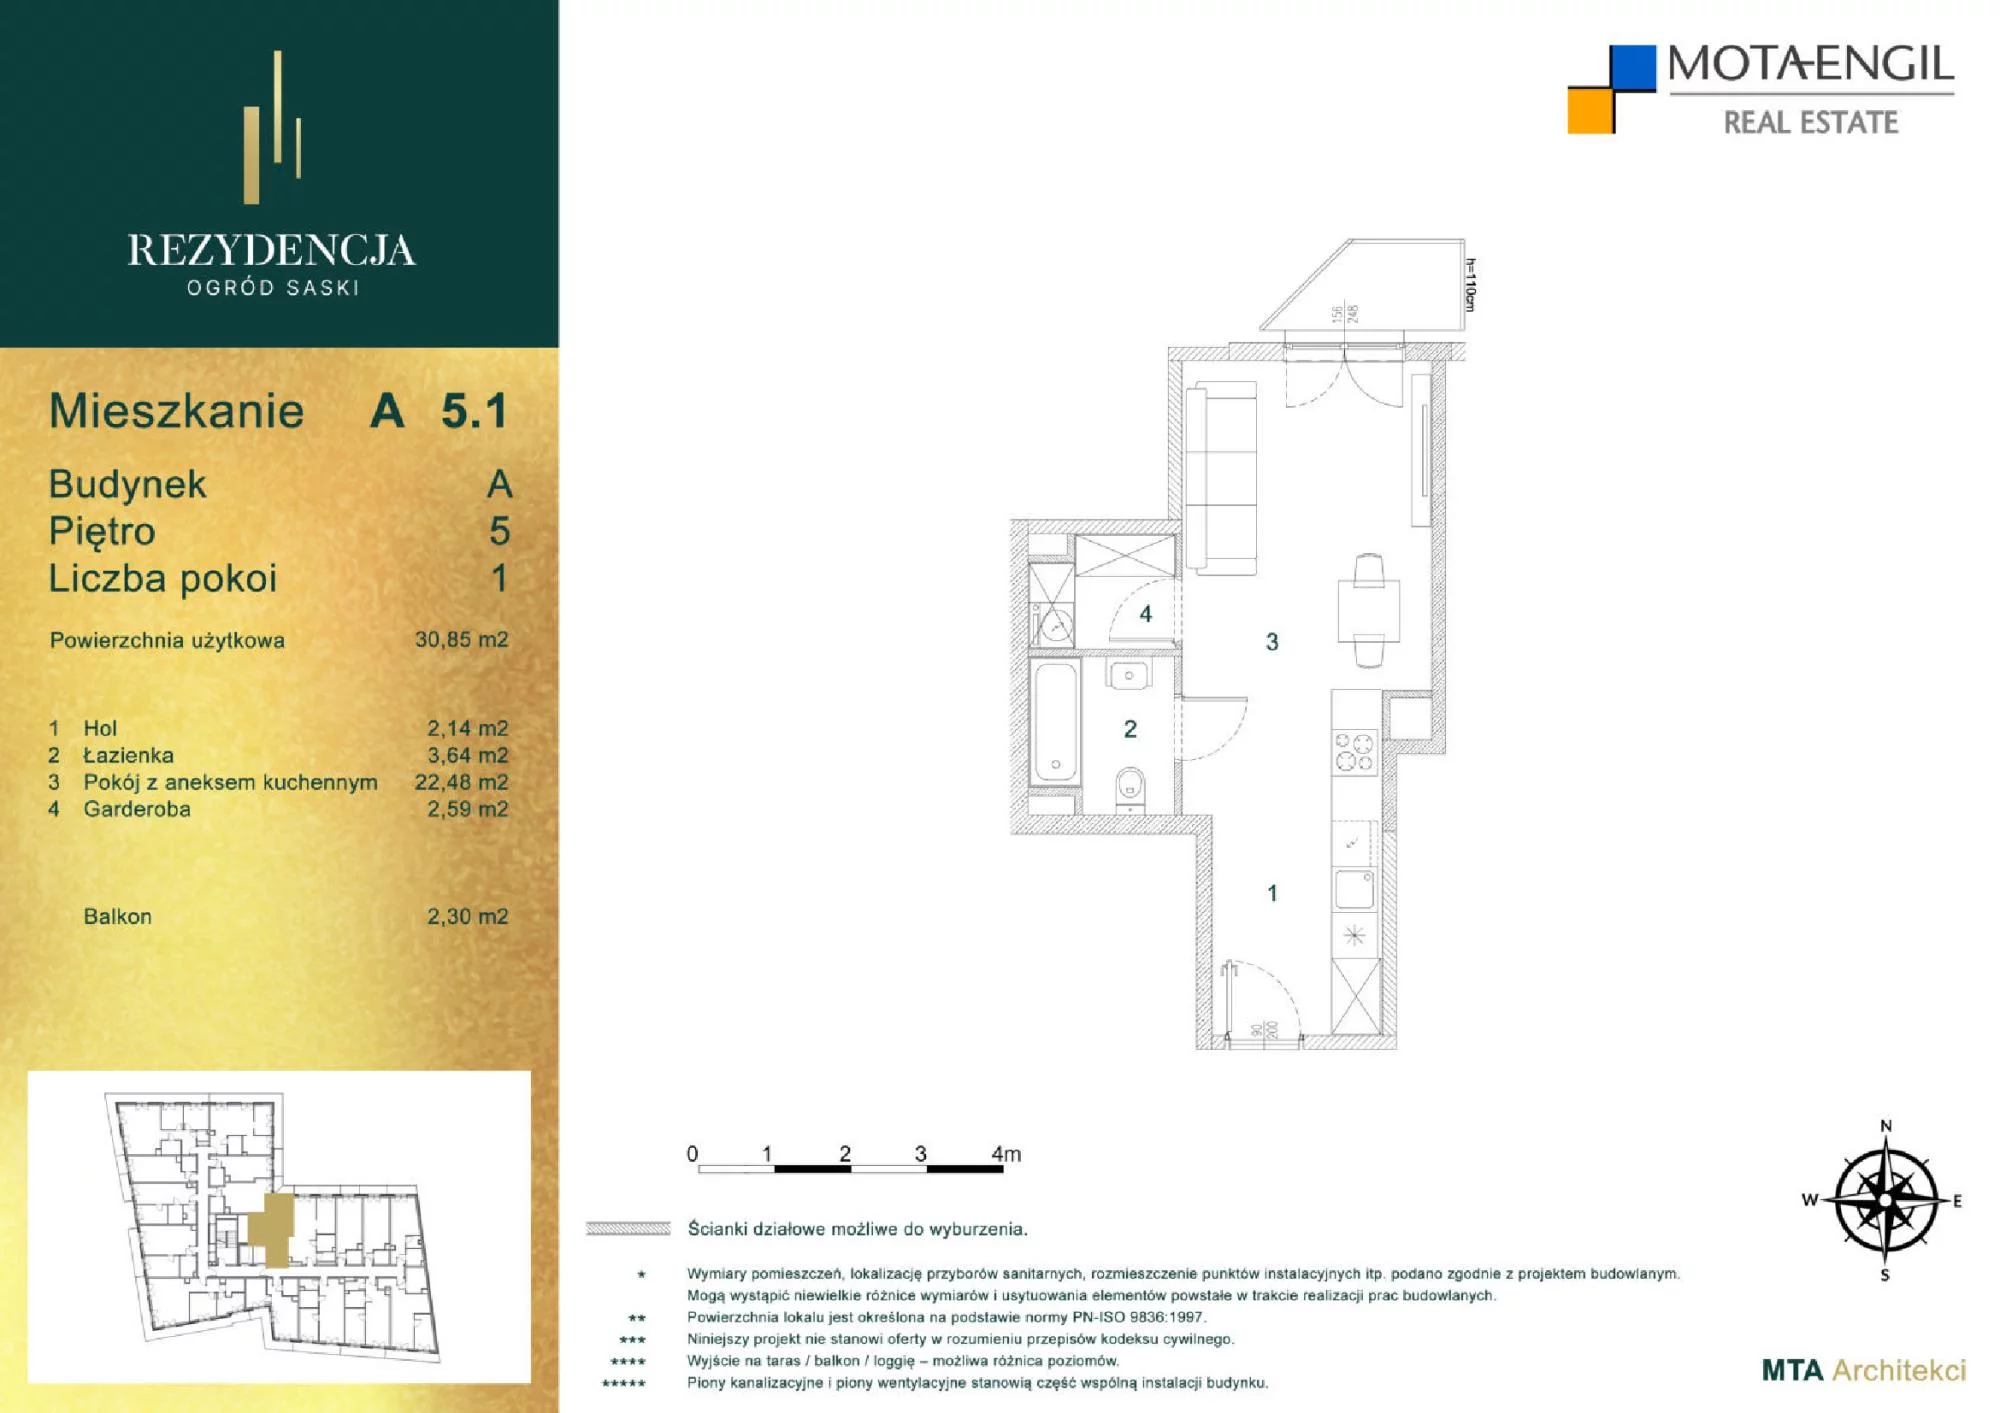 Mieszkanie 30,85 m², piętro 5, oferta nr A5.1, Rezydencja Ogród Saski, Lublin, Wieniawa, ul. Jasna 7, 7A